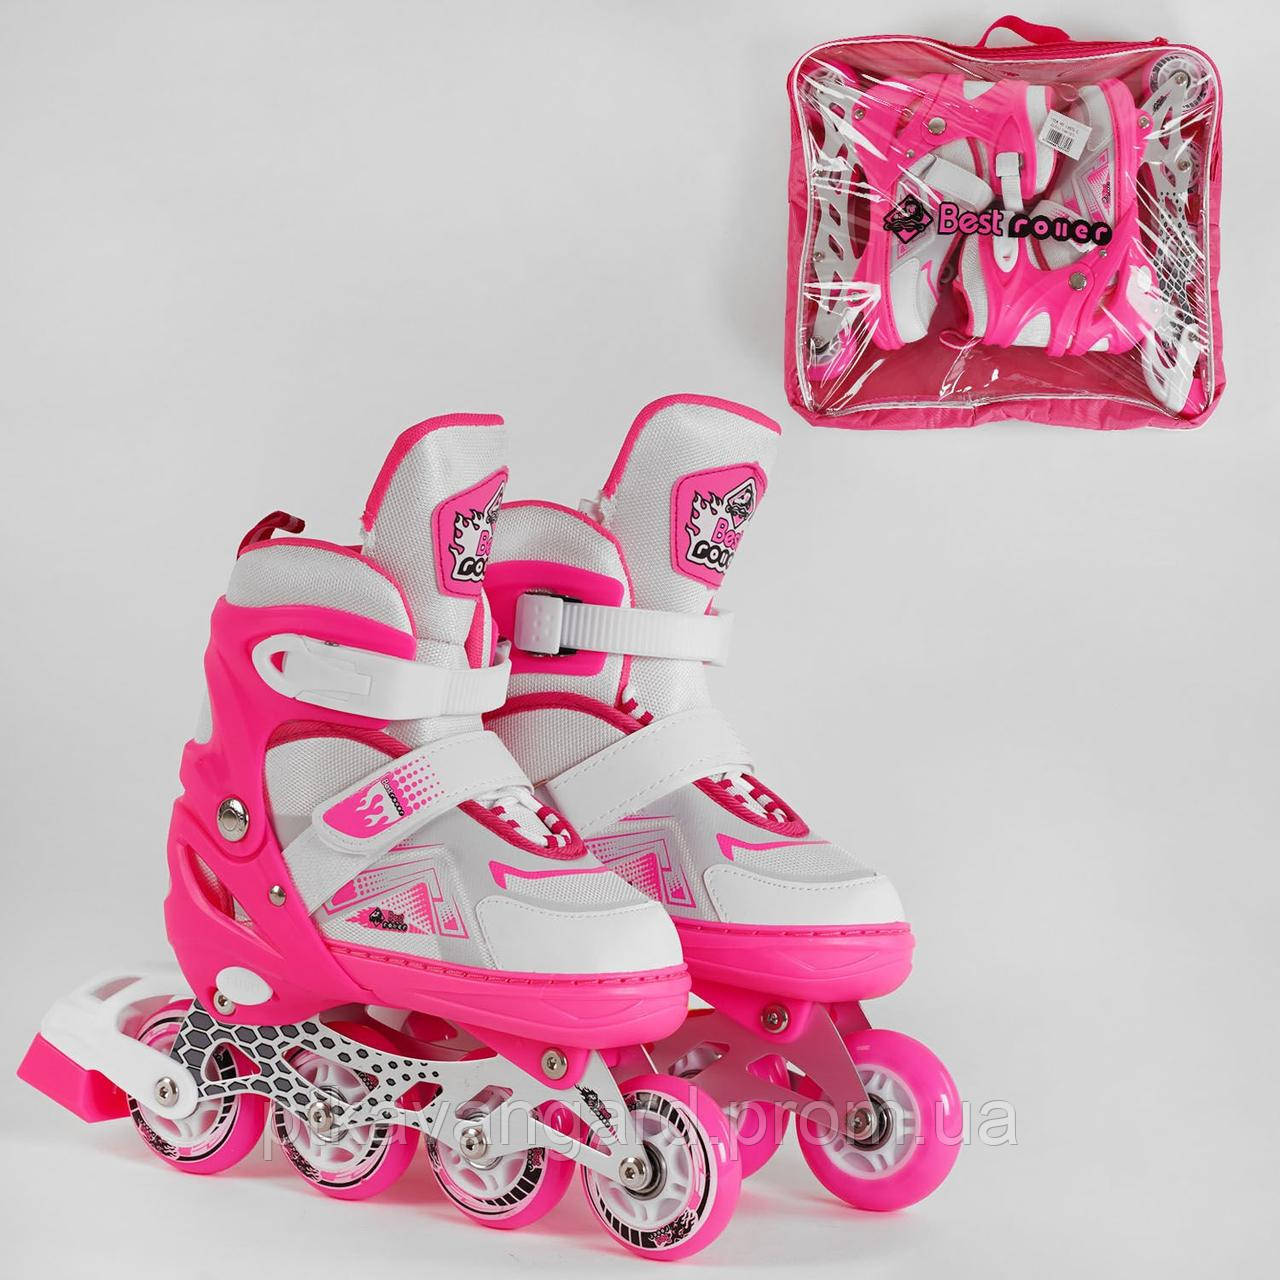 Дитячі ролики (роликові ковзани) Рожевий для дівчаток розмір 38-42 (L) Best Roller колеса PU